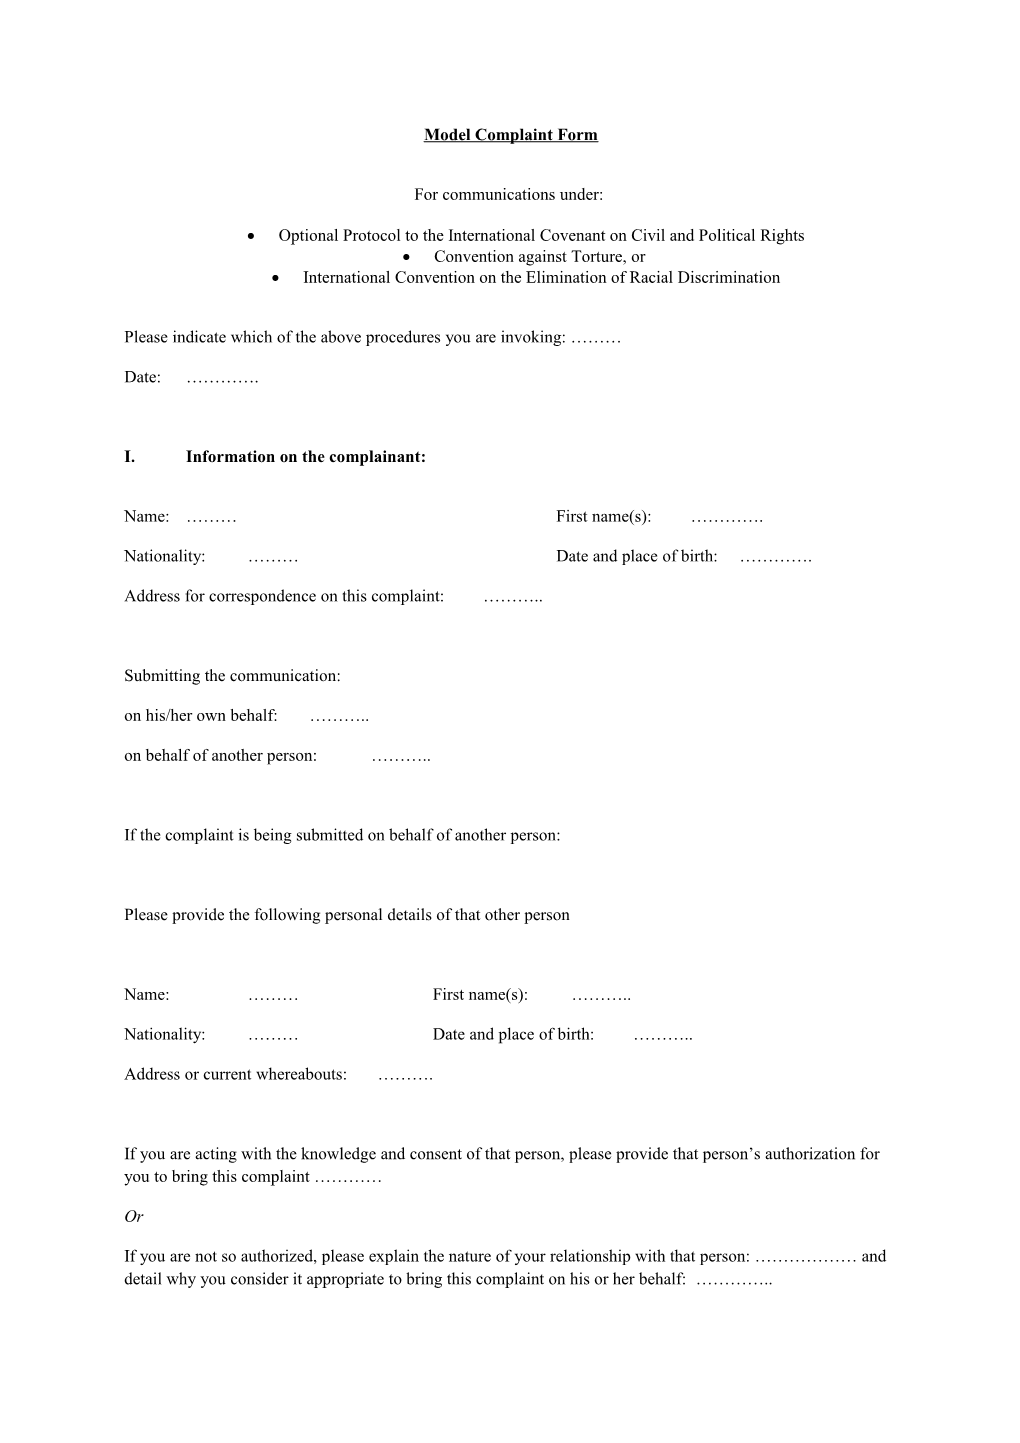 Model Complaint Form